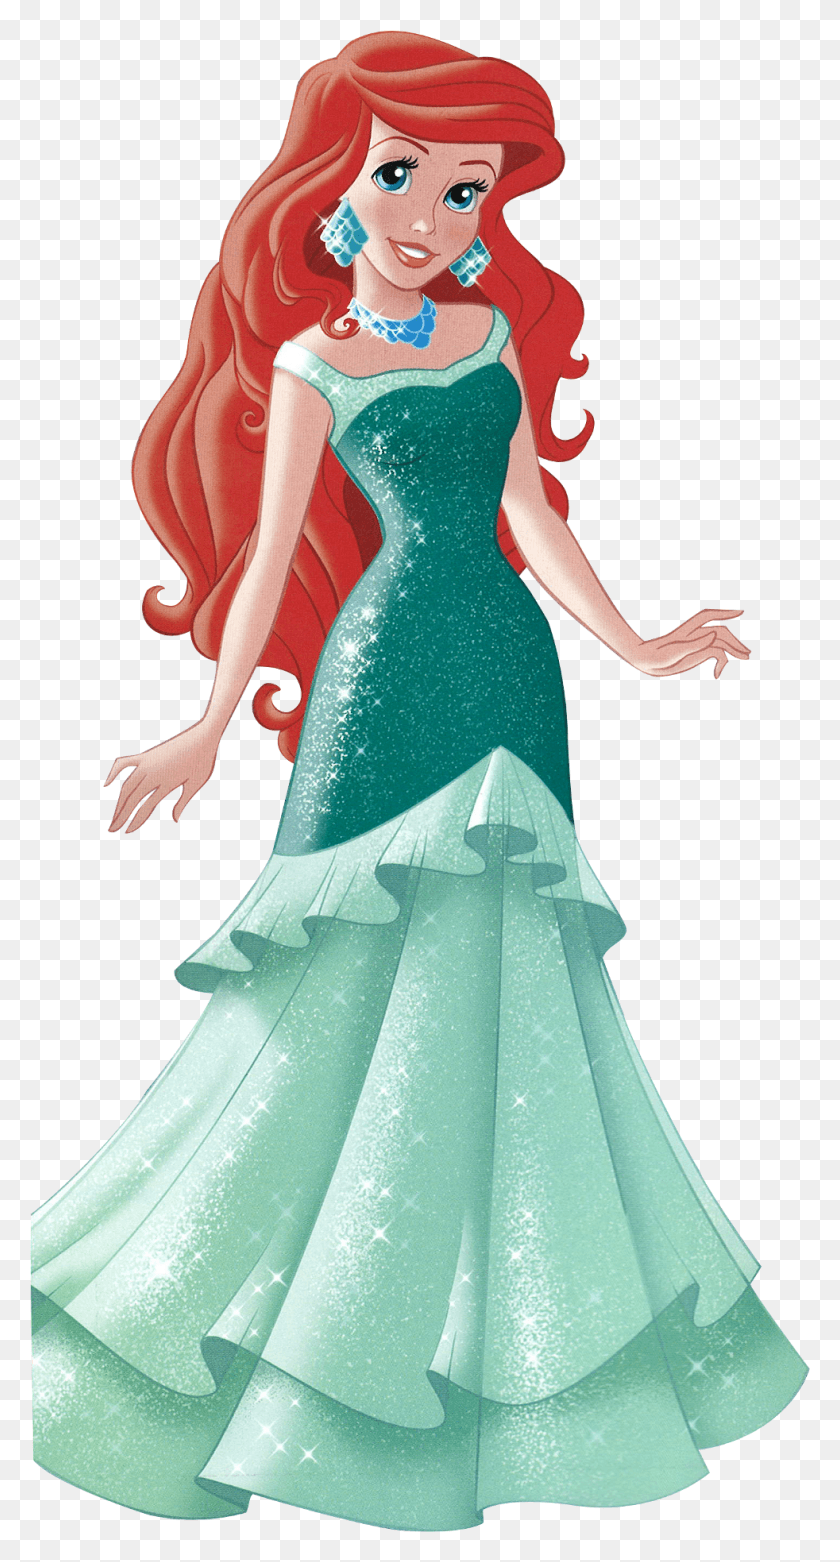 982x1891 La Princesa De Disney Imágenes Walt Disney Larawan La Princesa De Disney Ariel, Pose De Danza, Actividades De Ocio, Ropa Hd Png Descargar